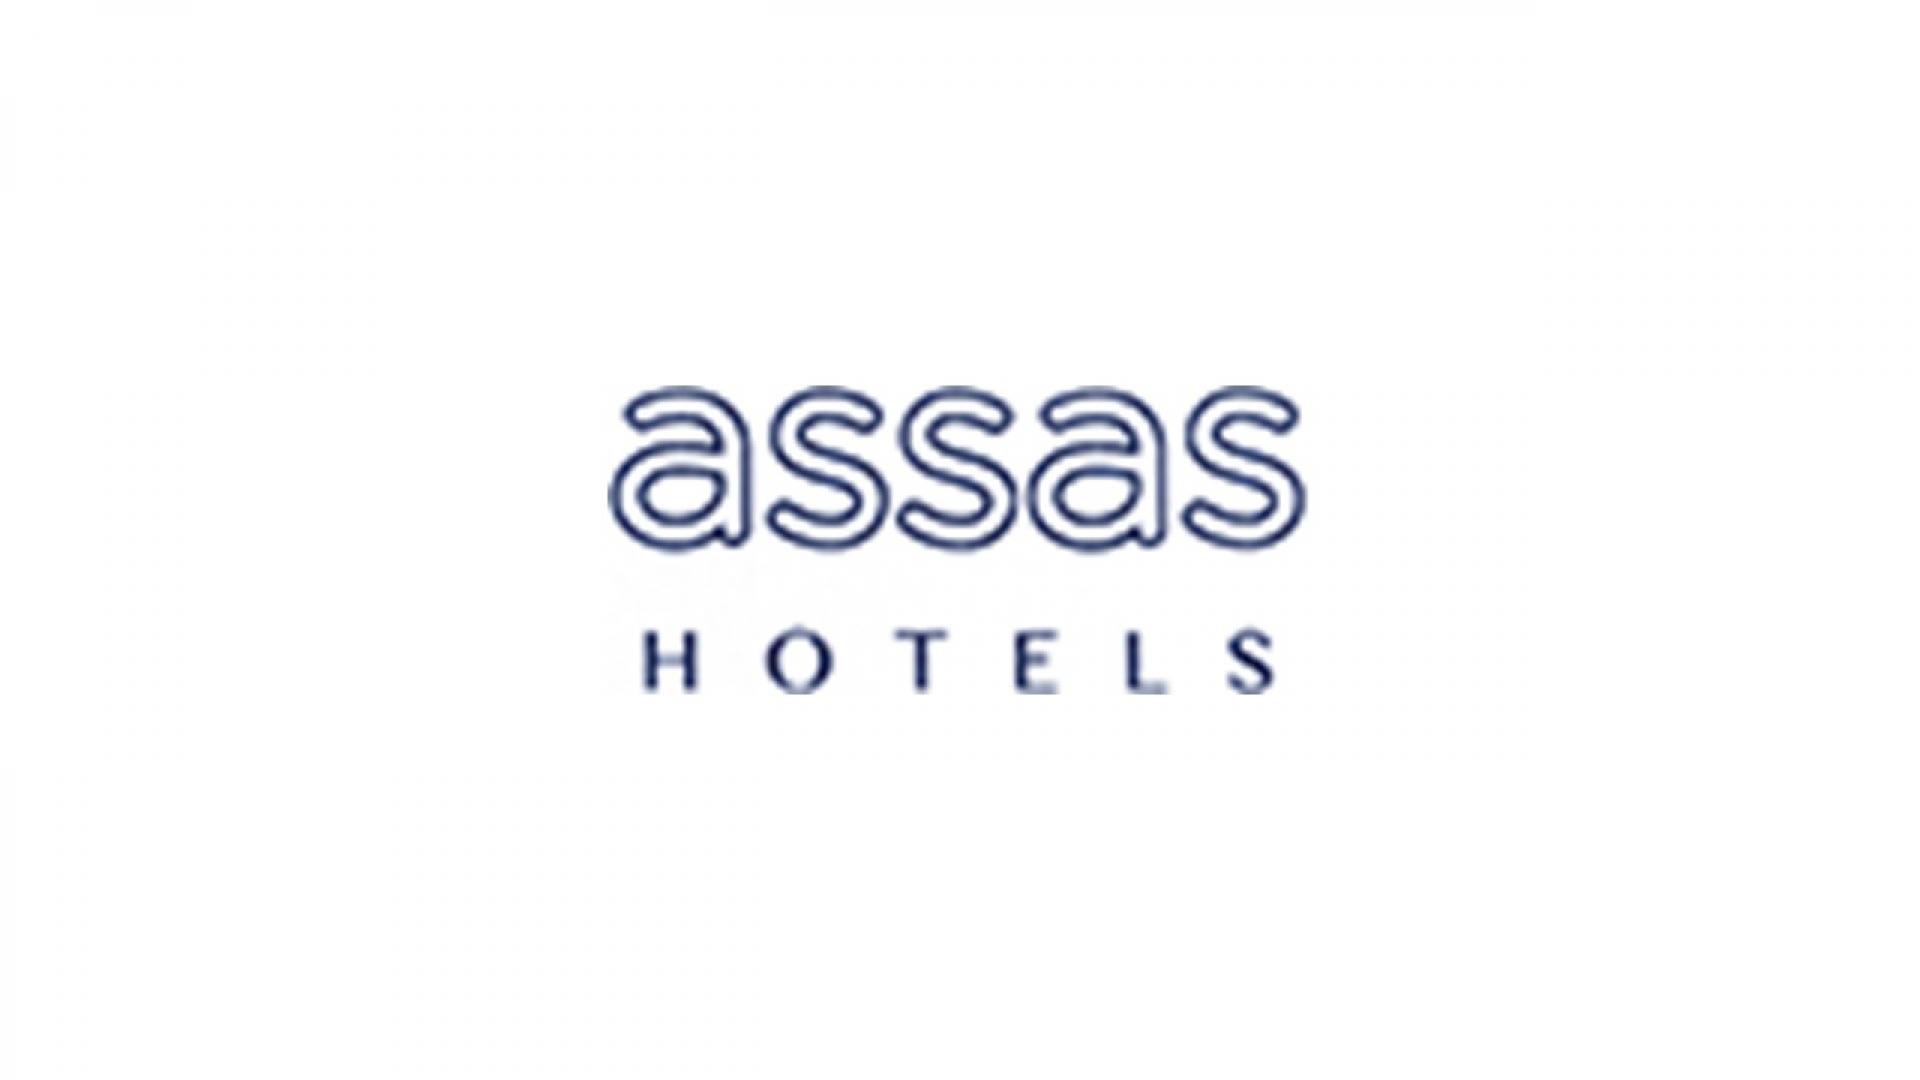 Assas hotel